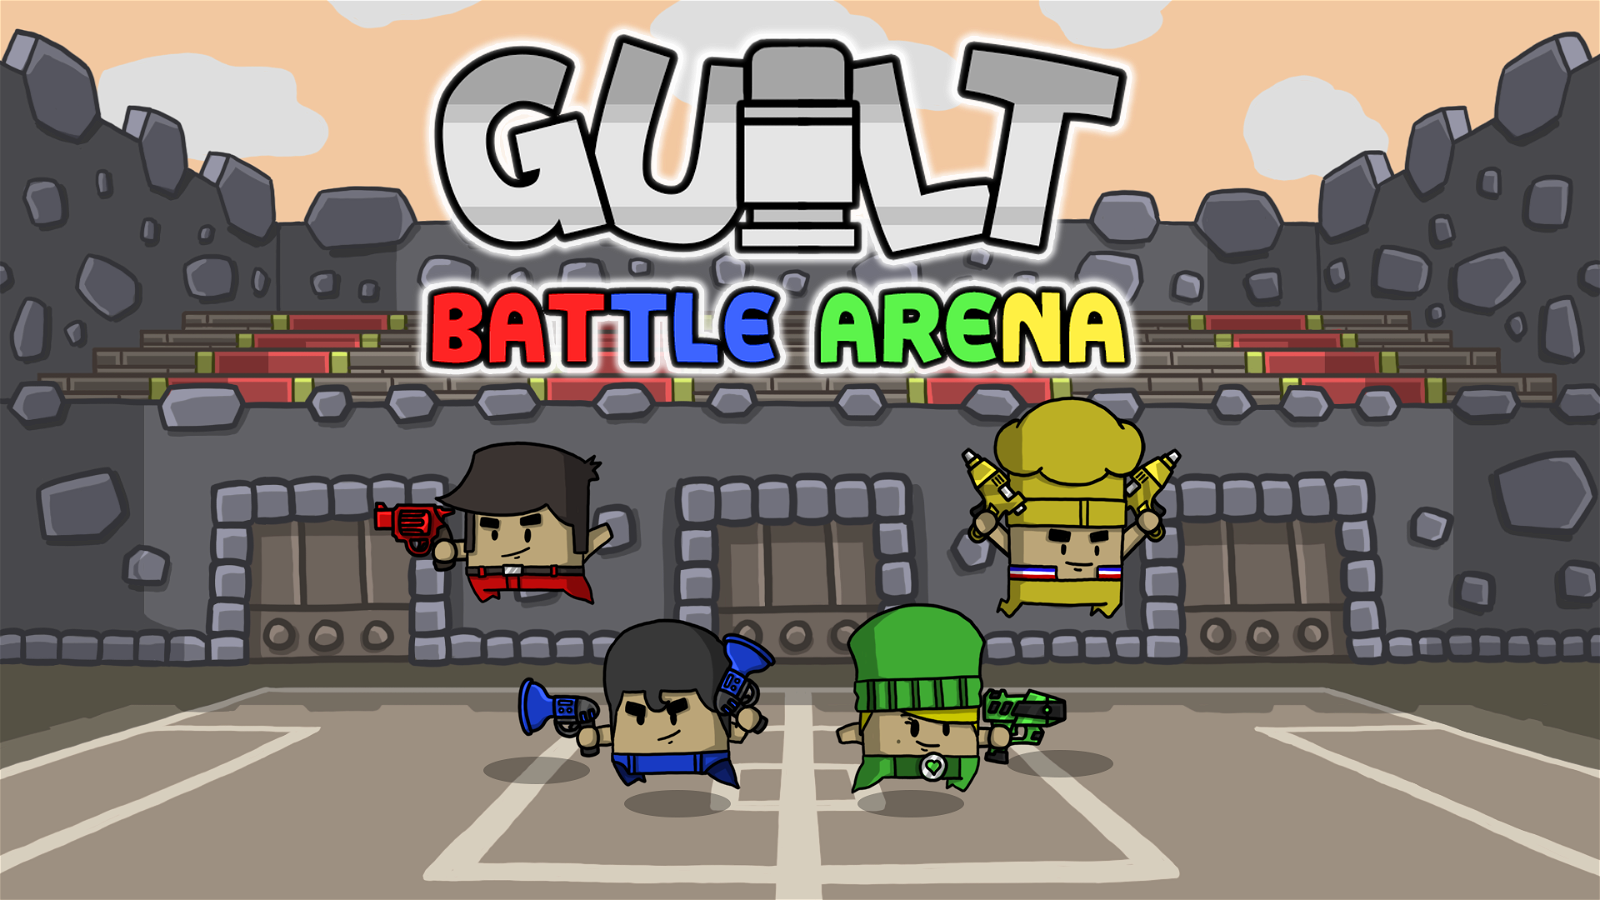 Image of Guilt Battle Arena